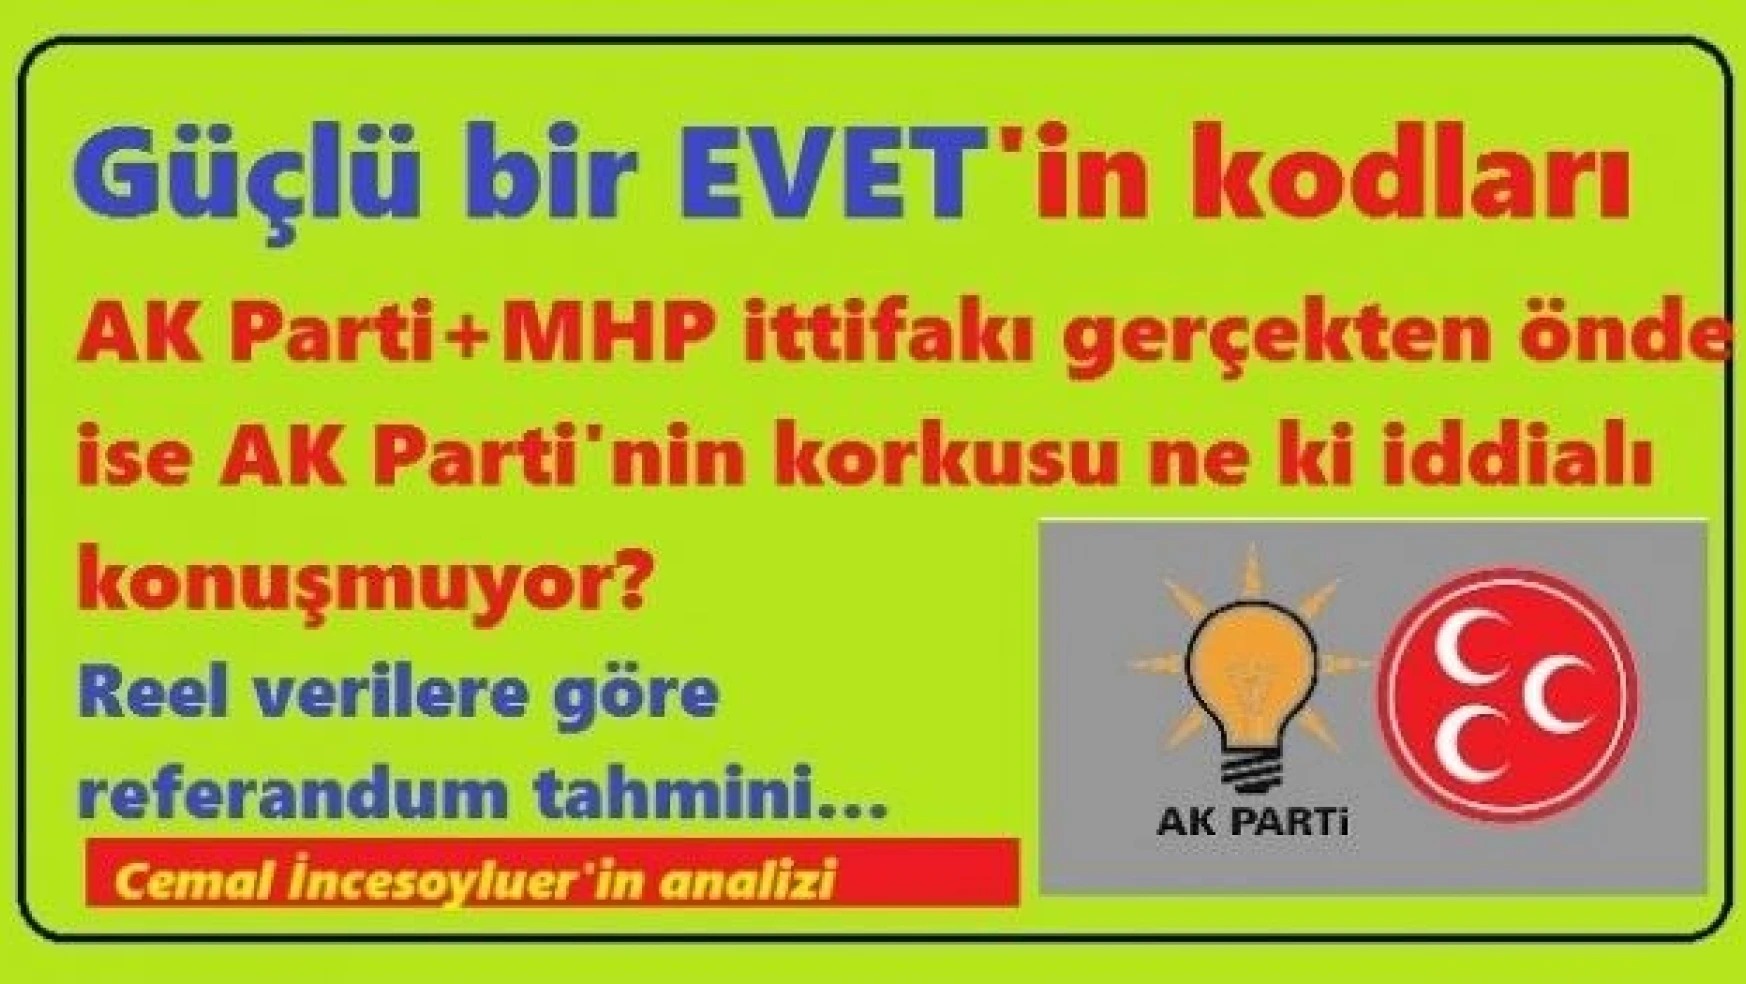 Güçlü bir EVET'in kodları... Kutsal ittifak önde ise AK Parti neden suskun?